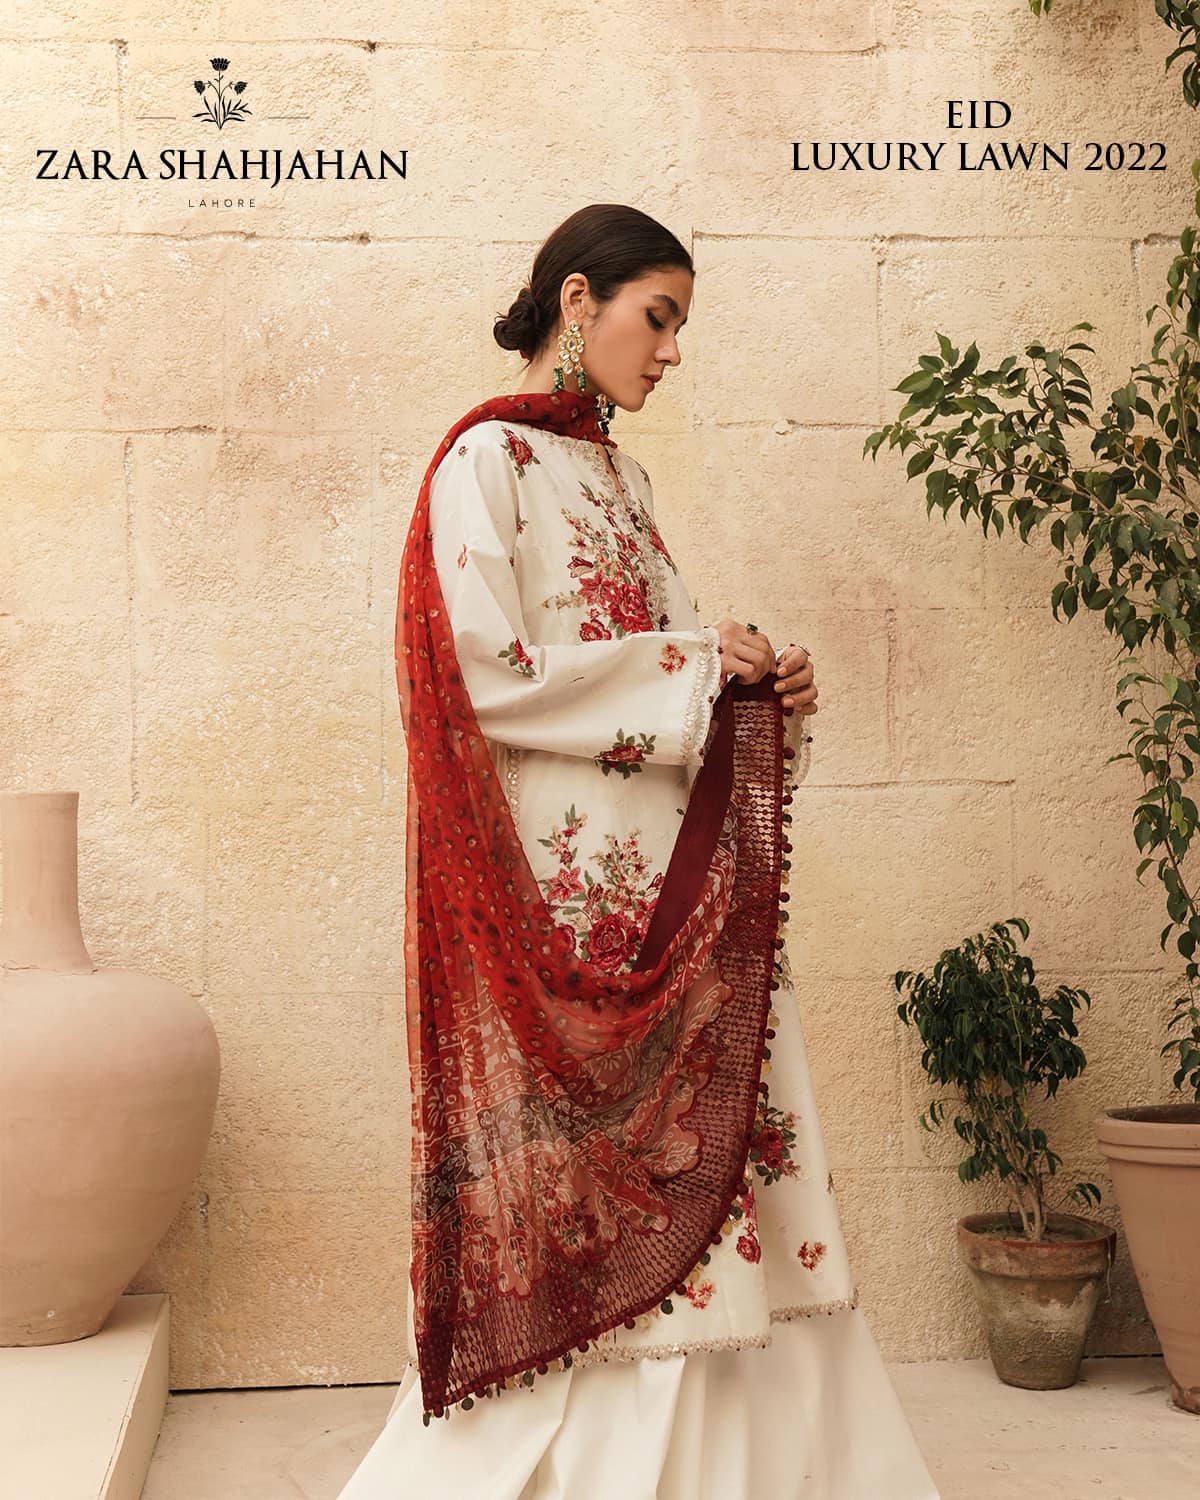 Zara Shahjahan Eid Luxury Lawn 2022